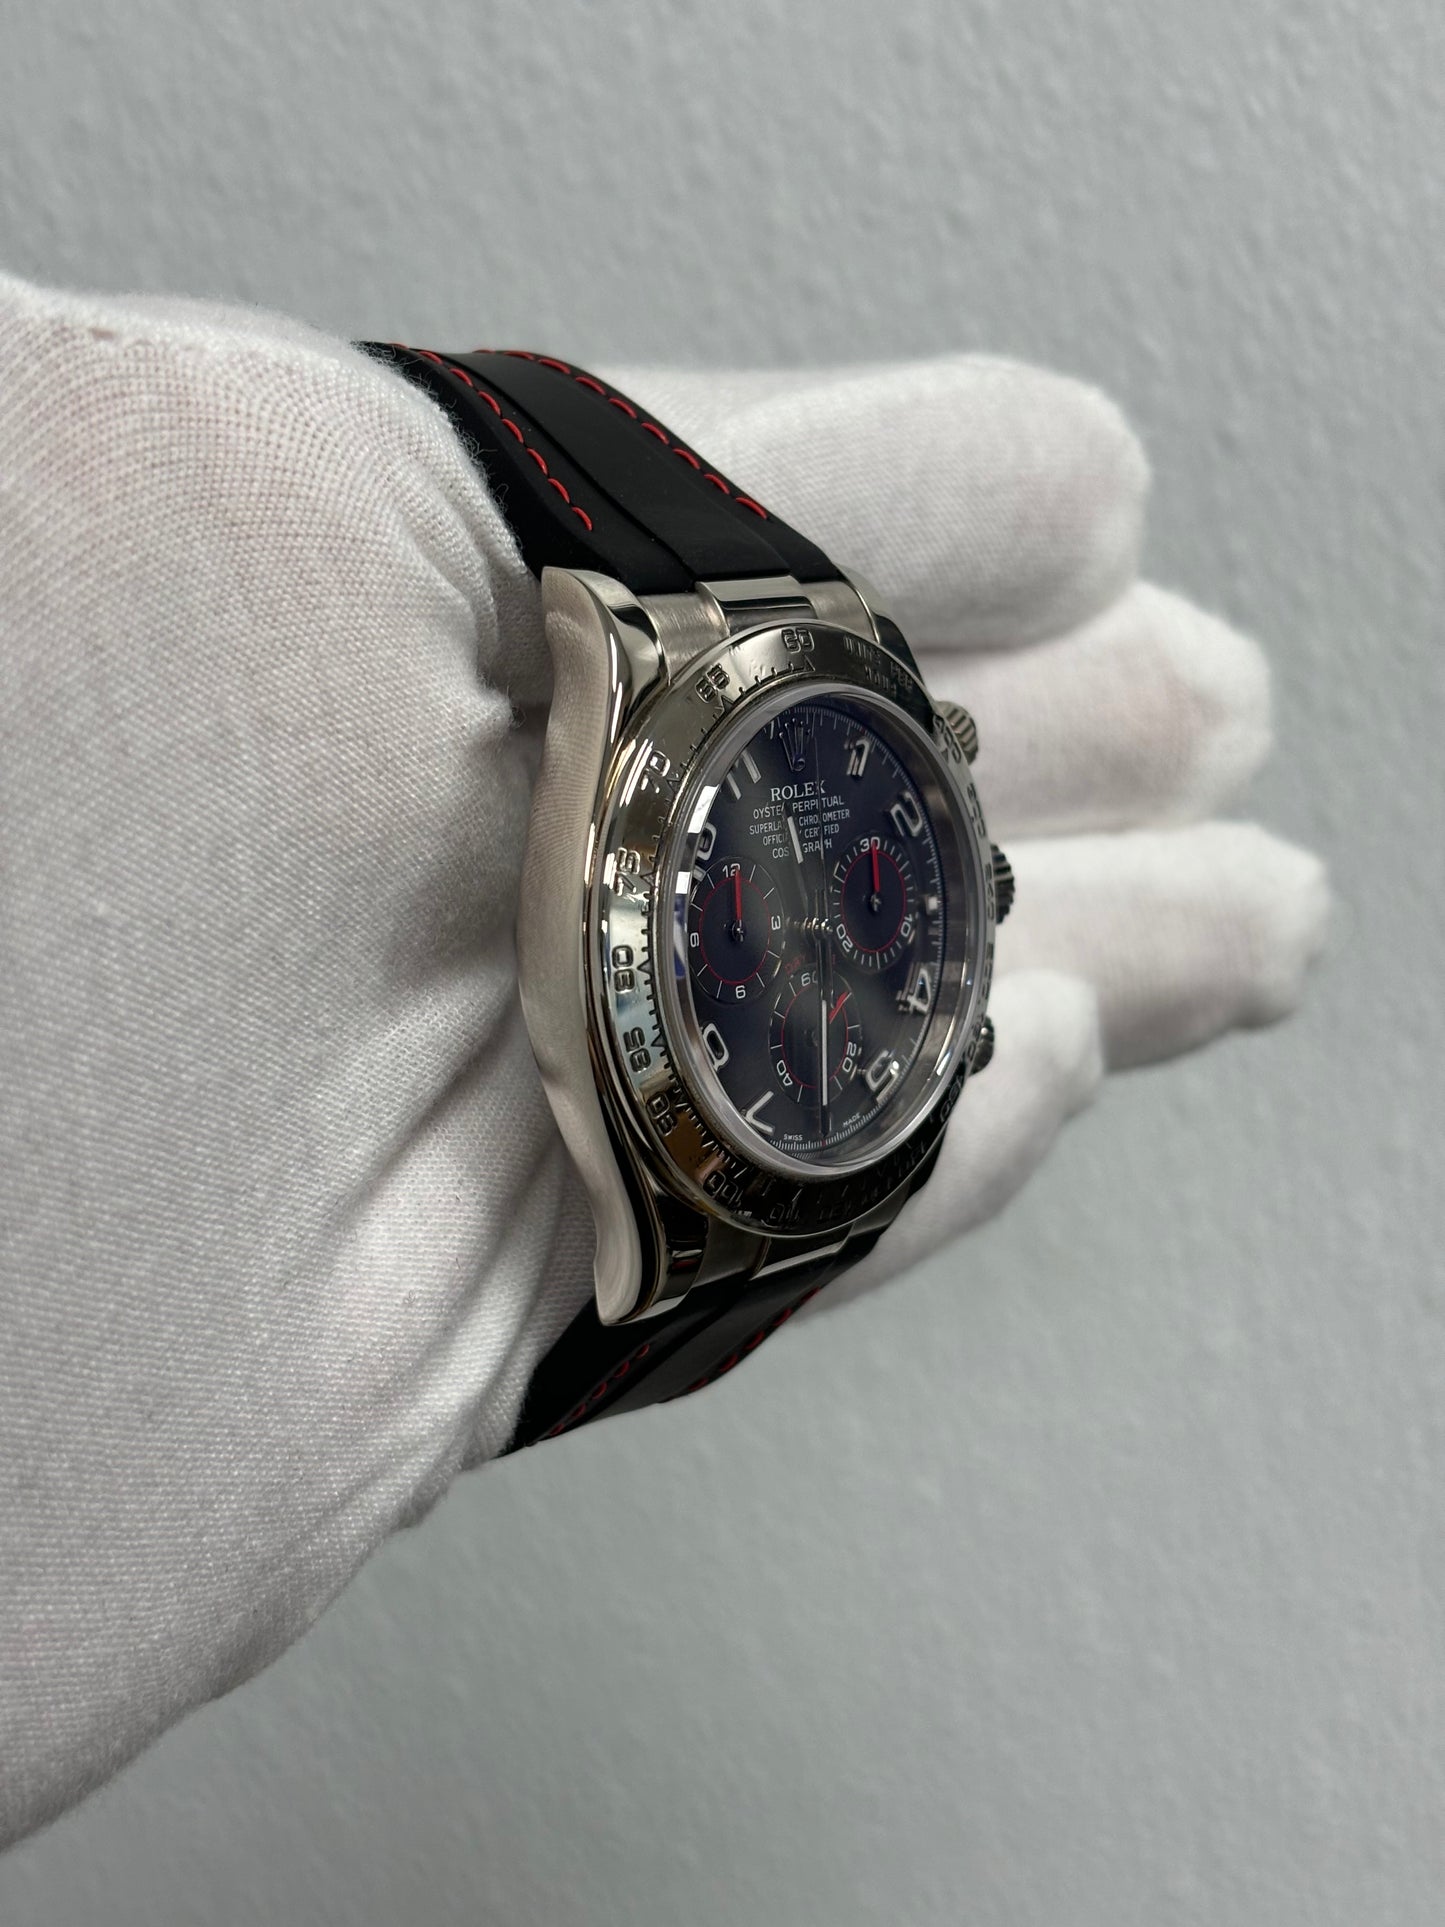 Rolex Daytona White Gold 40mm Grey Chronograph Dial Watch Reference# 116519 - Happy Jewelers Fine Jewelry Lifetime Warranty